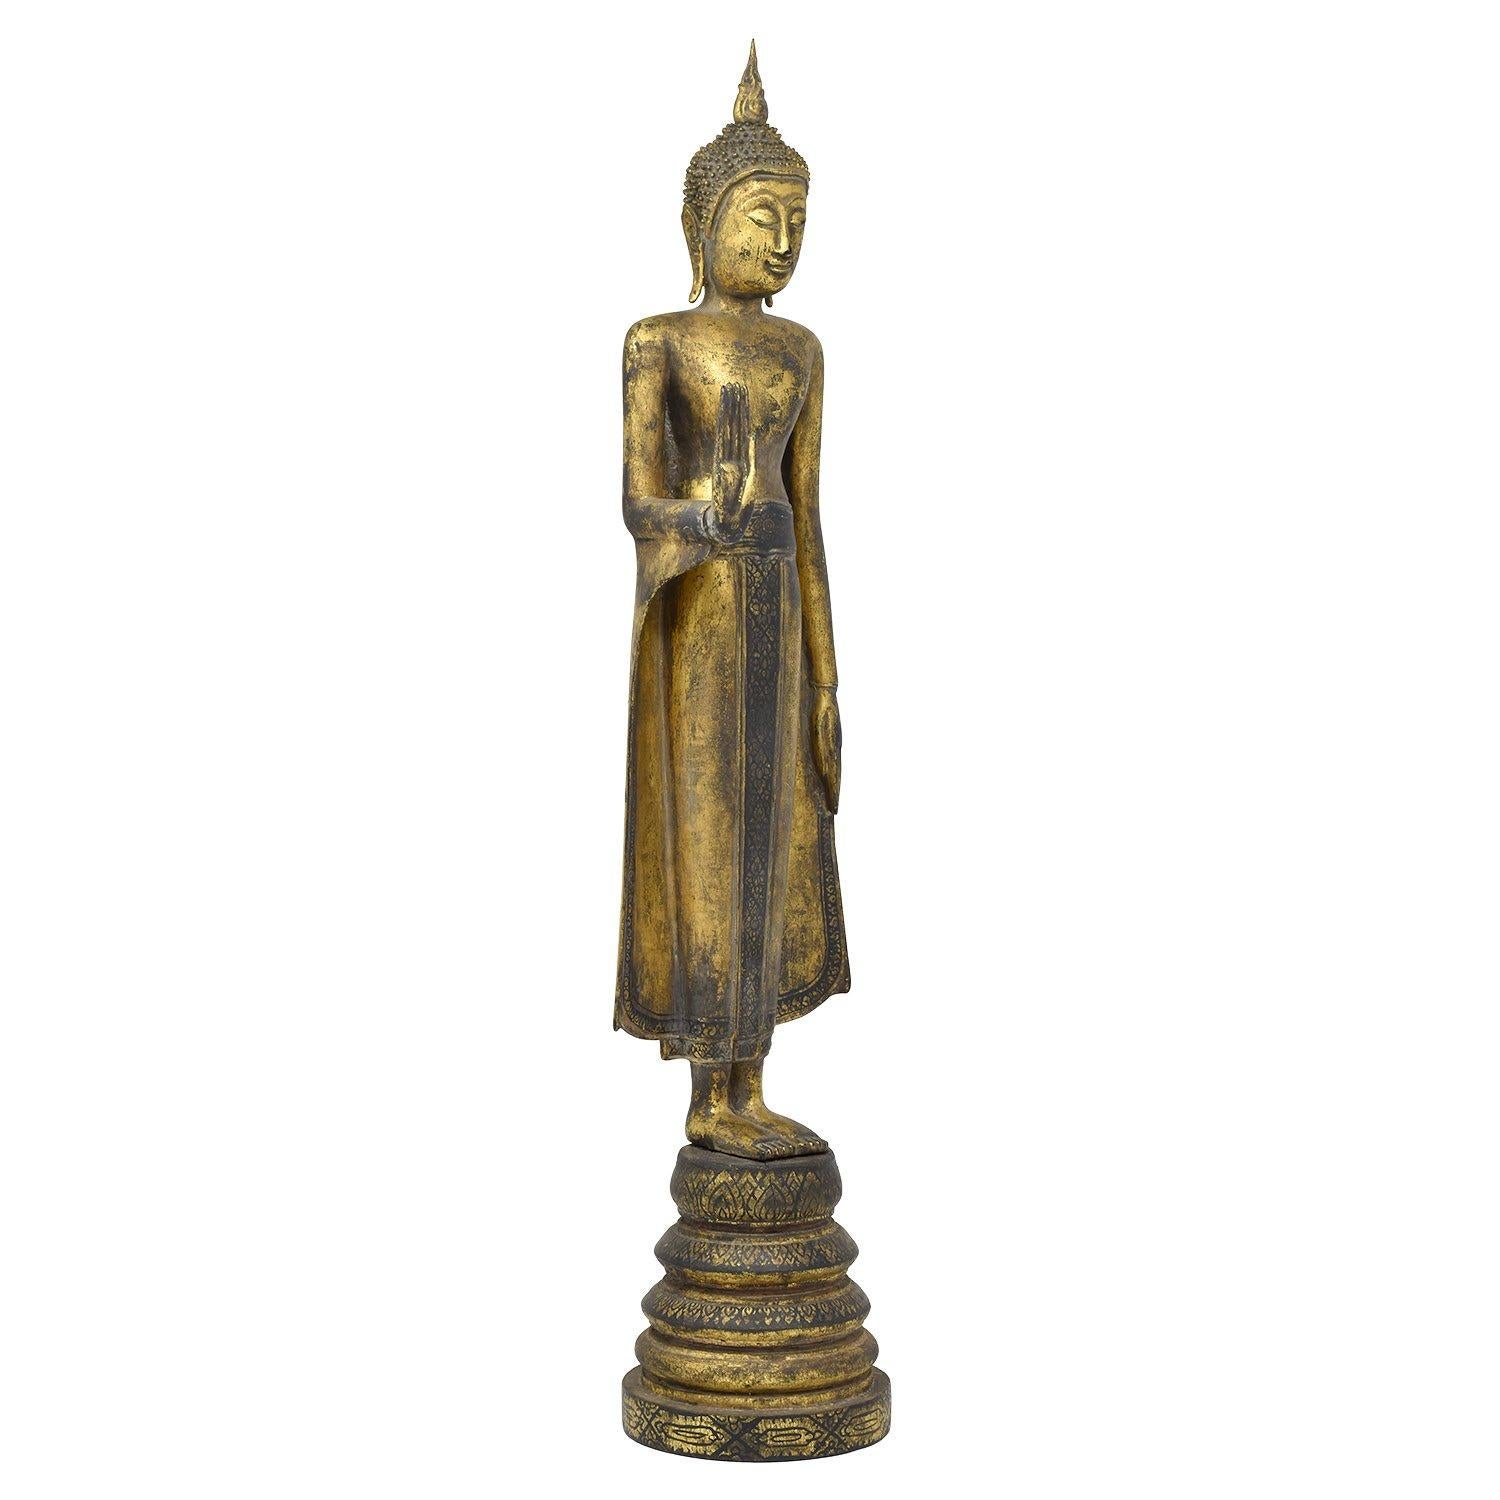 Bouddha debout, Thaïlande.

Thaïlande
Bois, laque
Fin du 20e siècle
Mesures : 24 x 5.5 x 4.5 in. / 61 x 14 x 12 cm.